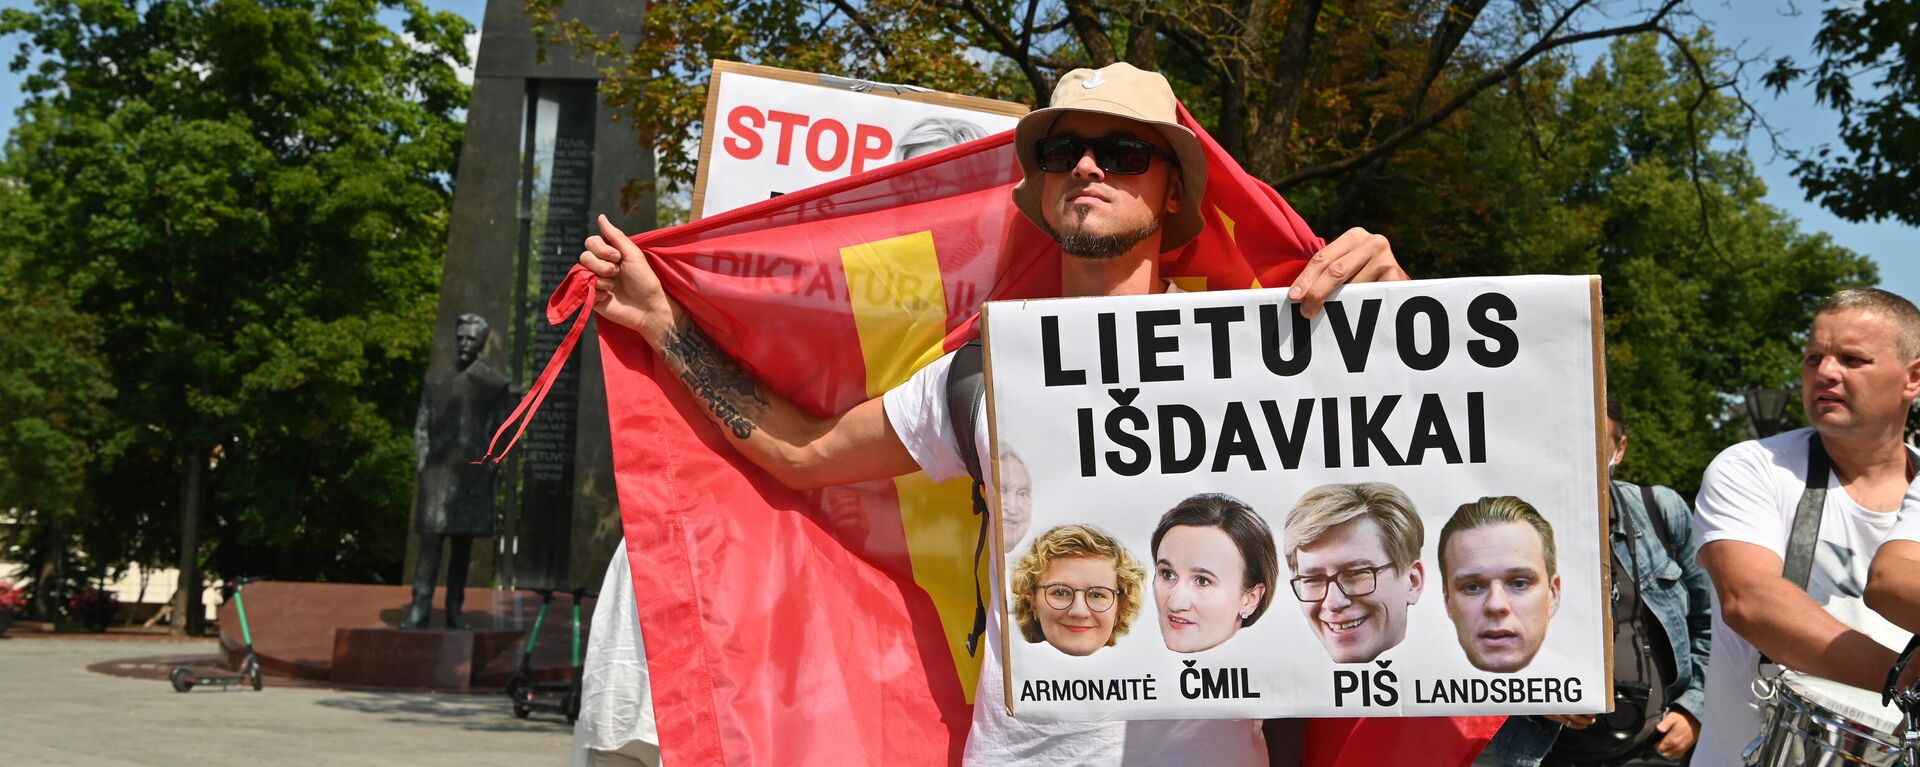 Акция протеста против действий властей Литвы в Вильнюсе - Sputnik Литва, 1920, 24.07.2021